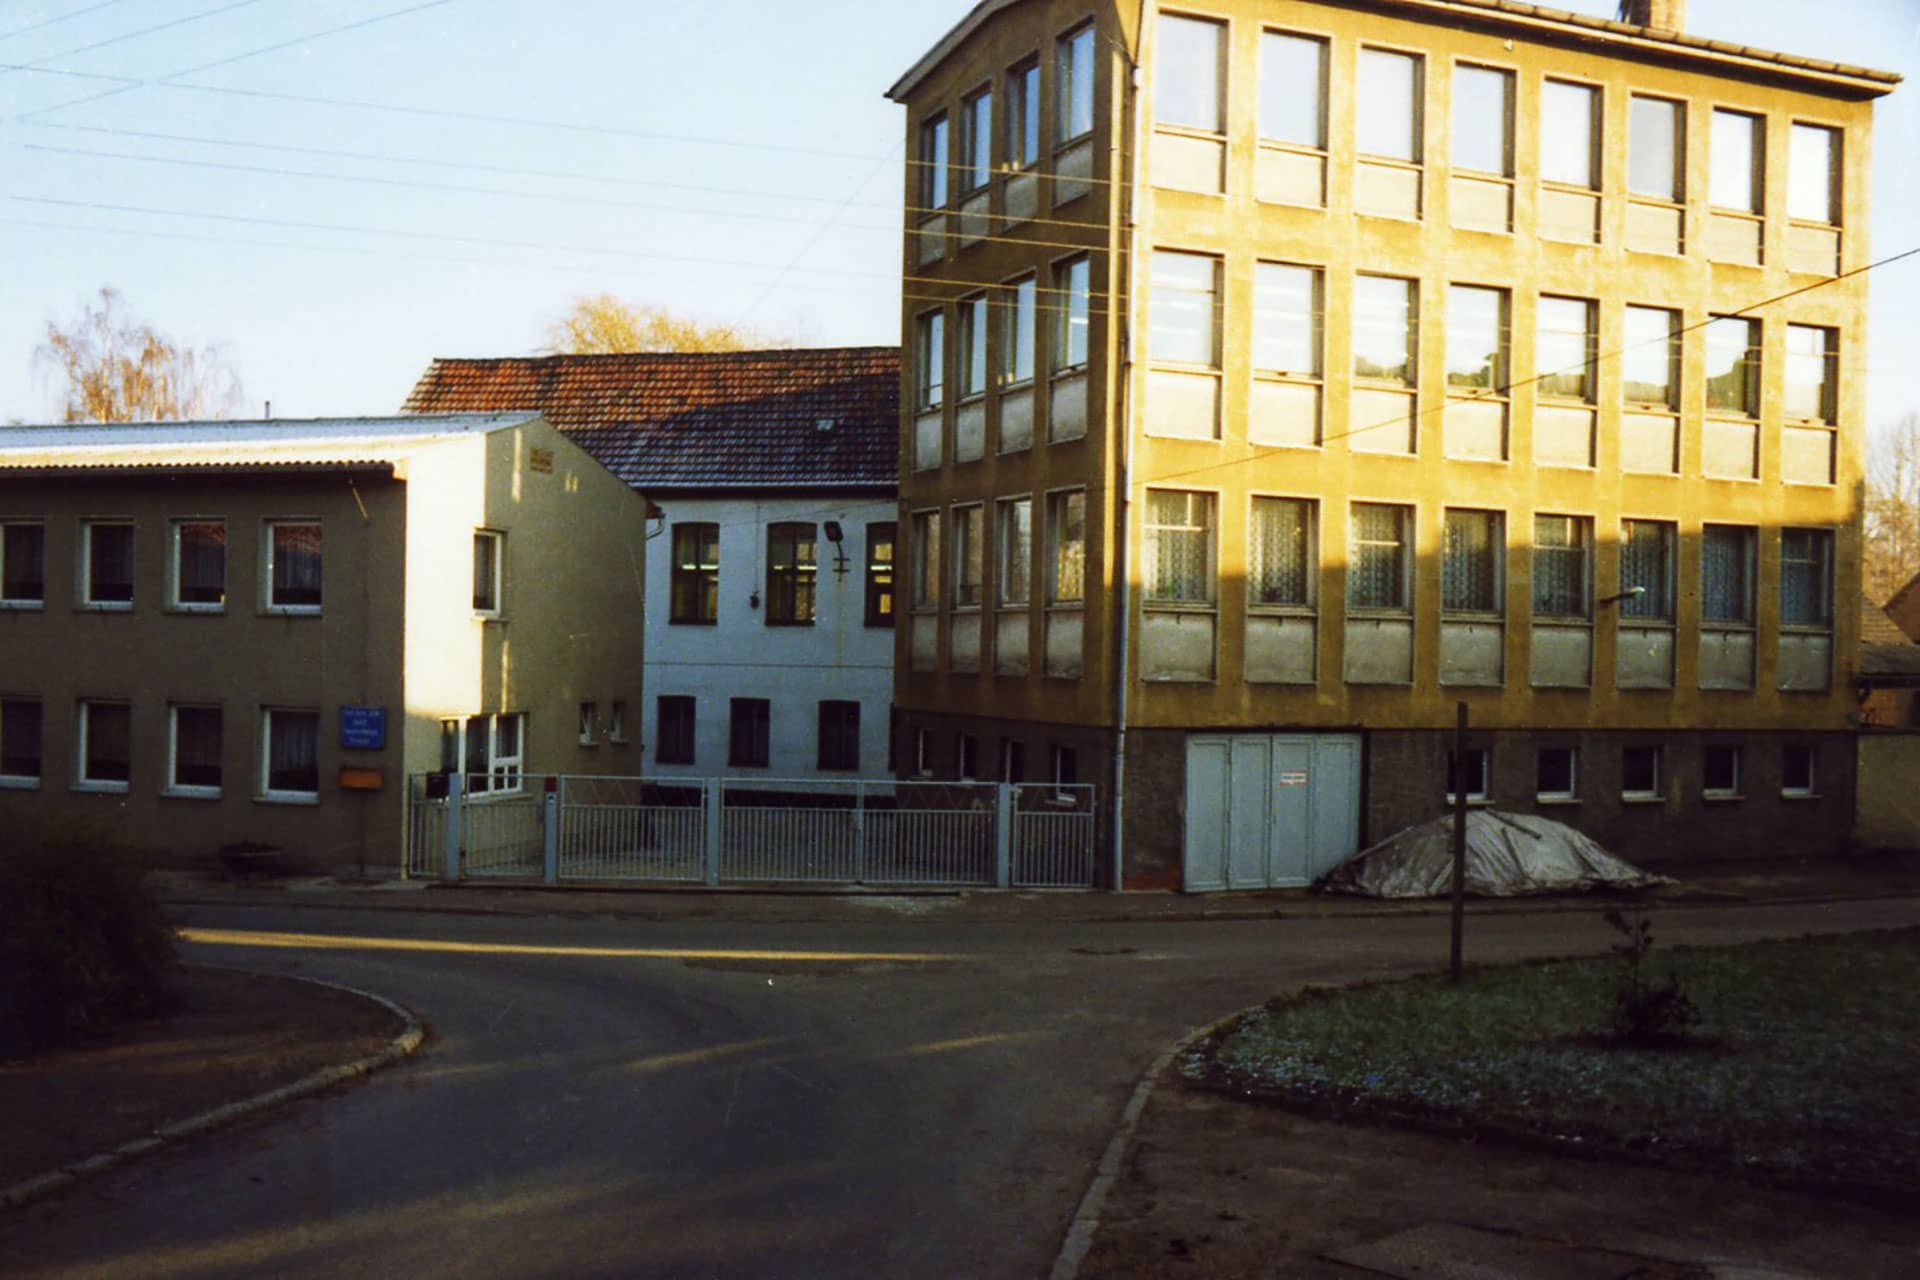 rmw Fertigungsgebäude Standort 1 in seiner Gründungszeit Januar 1992